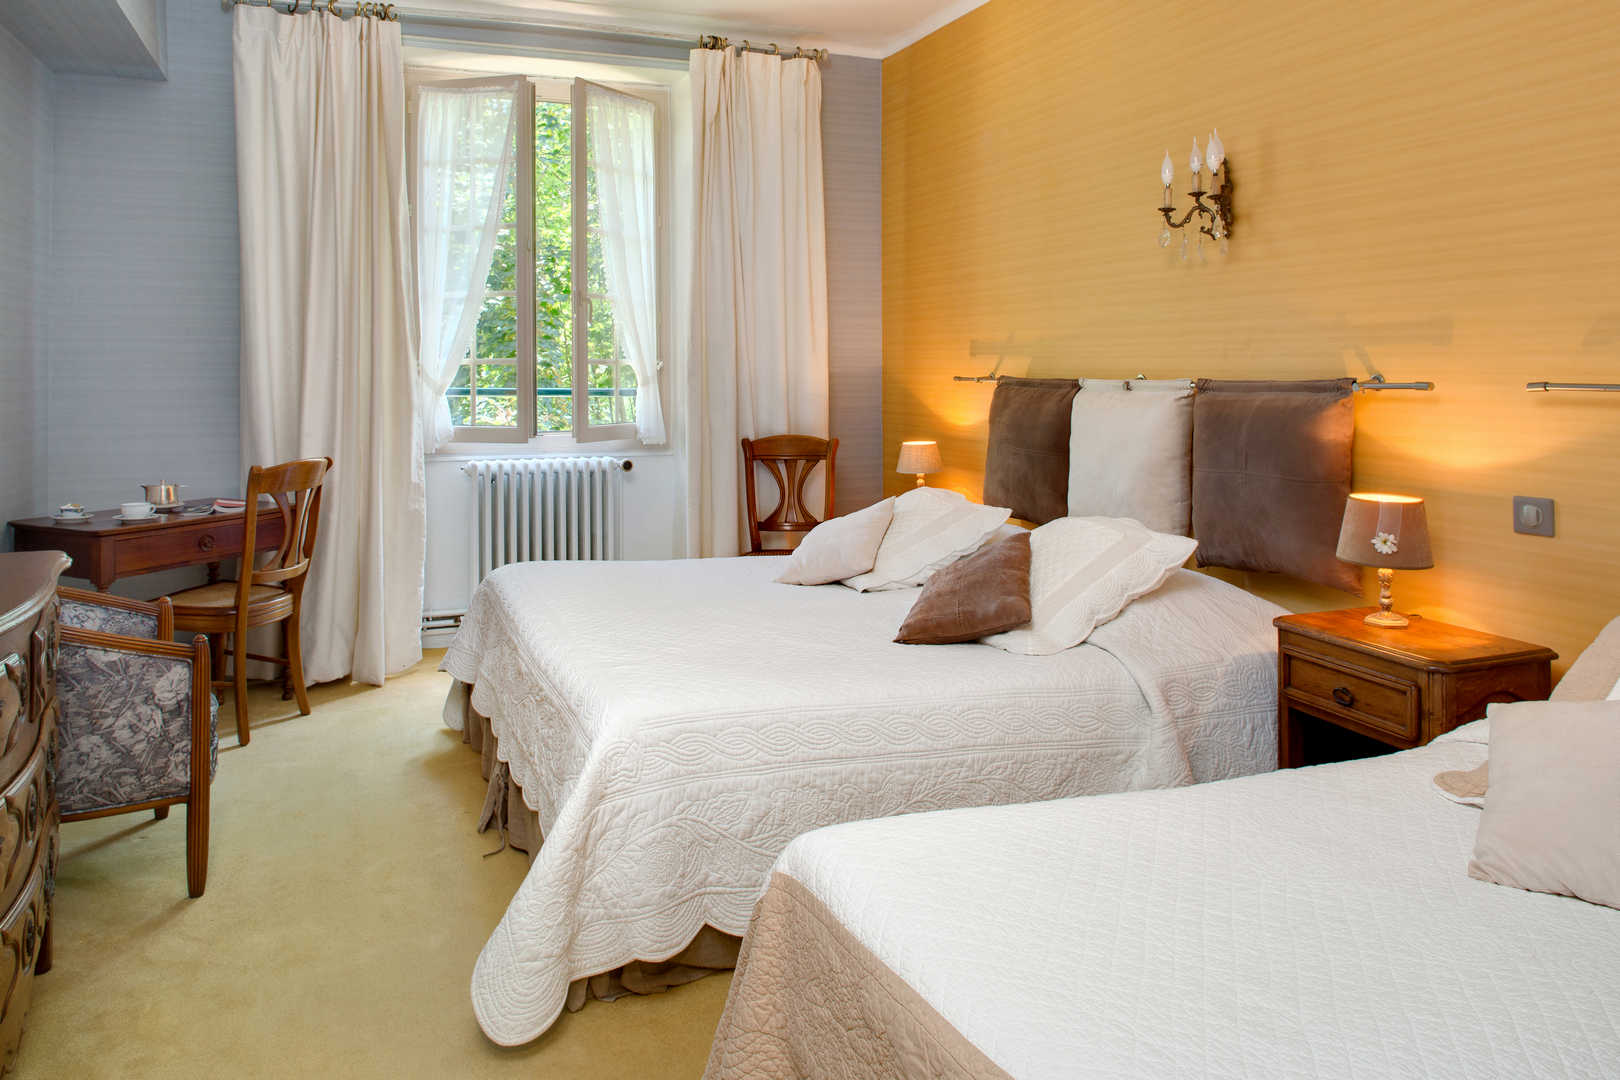 Vue intérieure sur une chambre avec double lit dans l'hôtel de charme en Dordogne, l'Esplanade